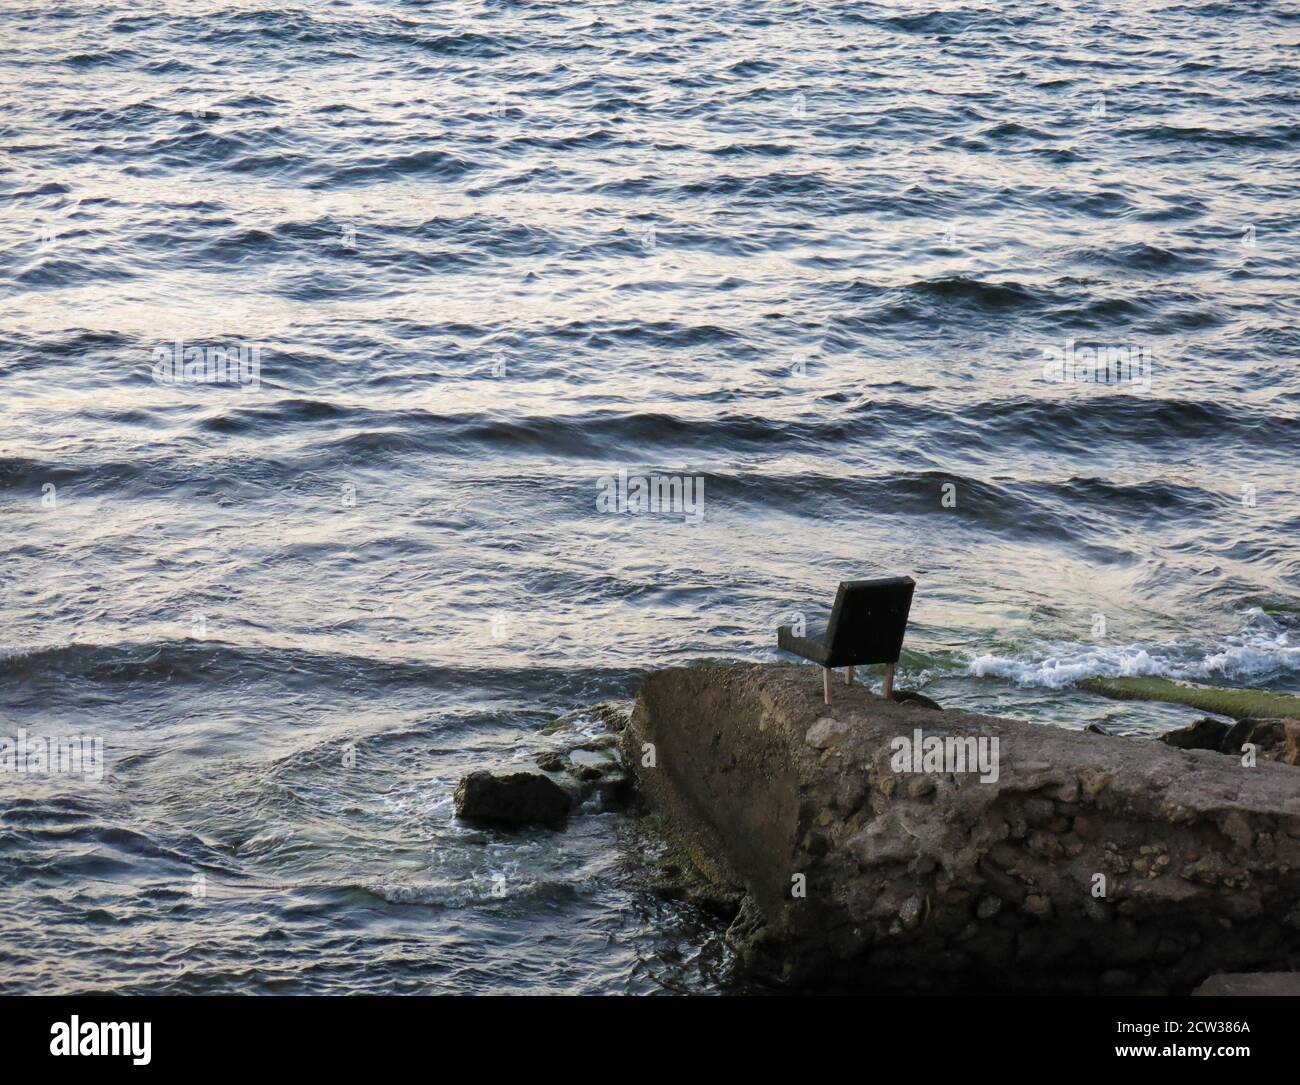 Chaise à trois pattes laissée sur un rocher au bord de la mer. Concept: Minimalisme dans la photographie. Banque D'Images